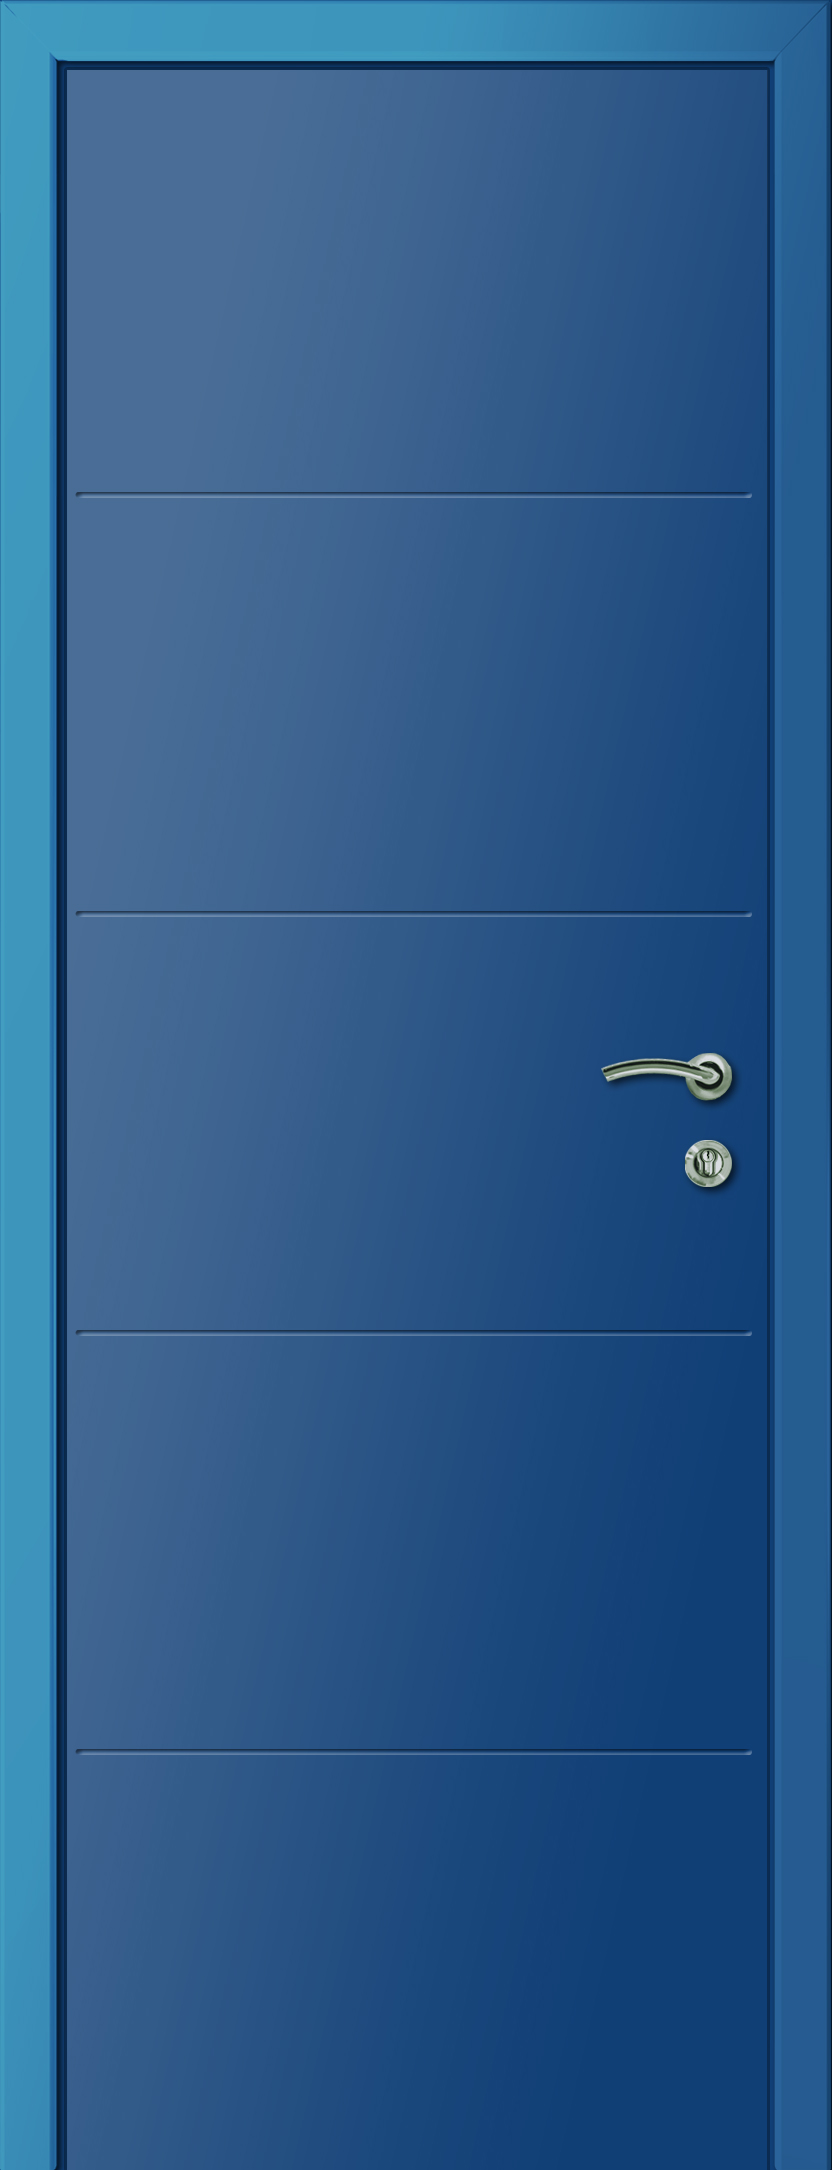 Пластиковая дверь KAPELLI multicolor Ф4Г RAL 5010 Синий